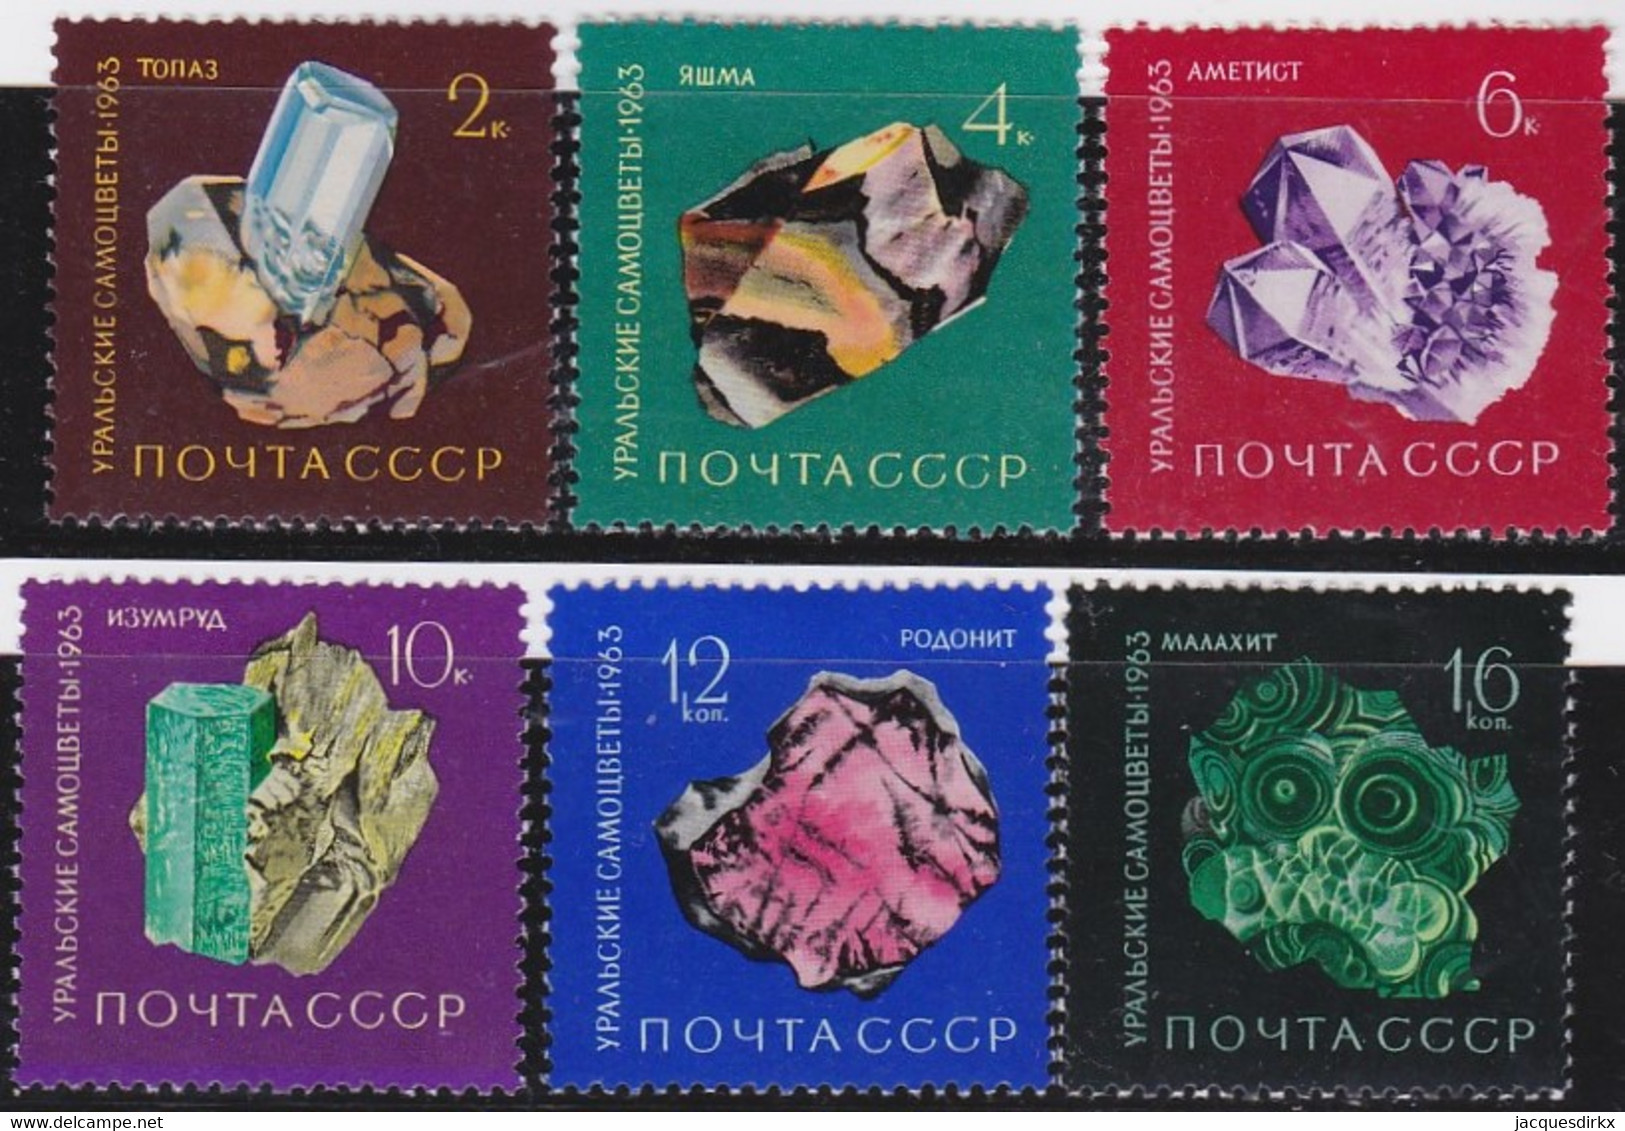 Russland     ,   Yvert      .   2752/2757        .     *    .     Ungebraucht  Mit Falz   .    /   .   Mint-hinged - Unused Stamps